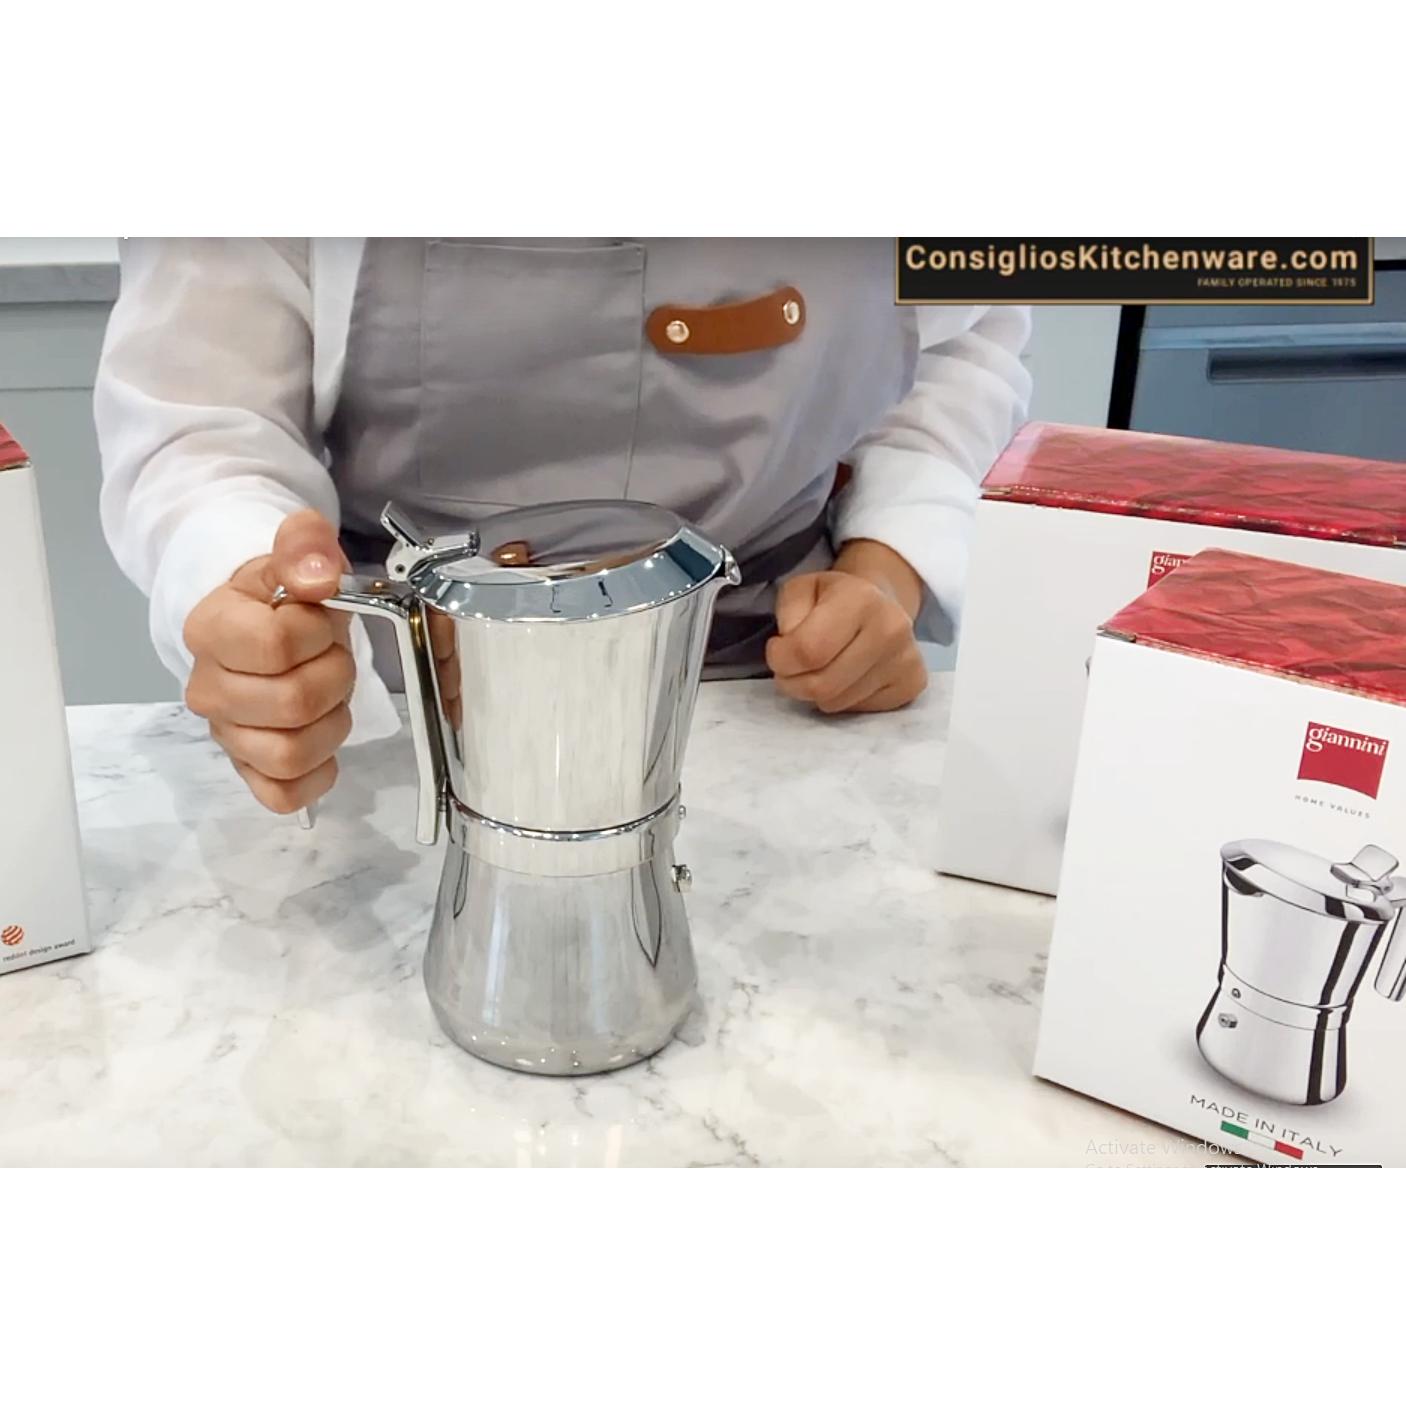 Moka Pot 6 Cup Stovetop Espresso Maker